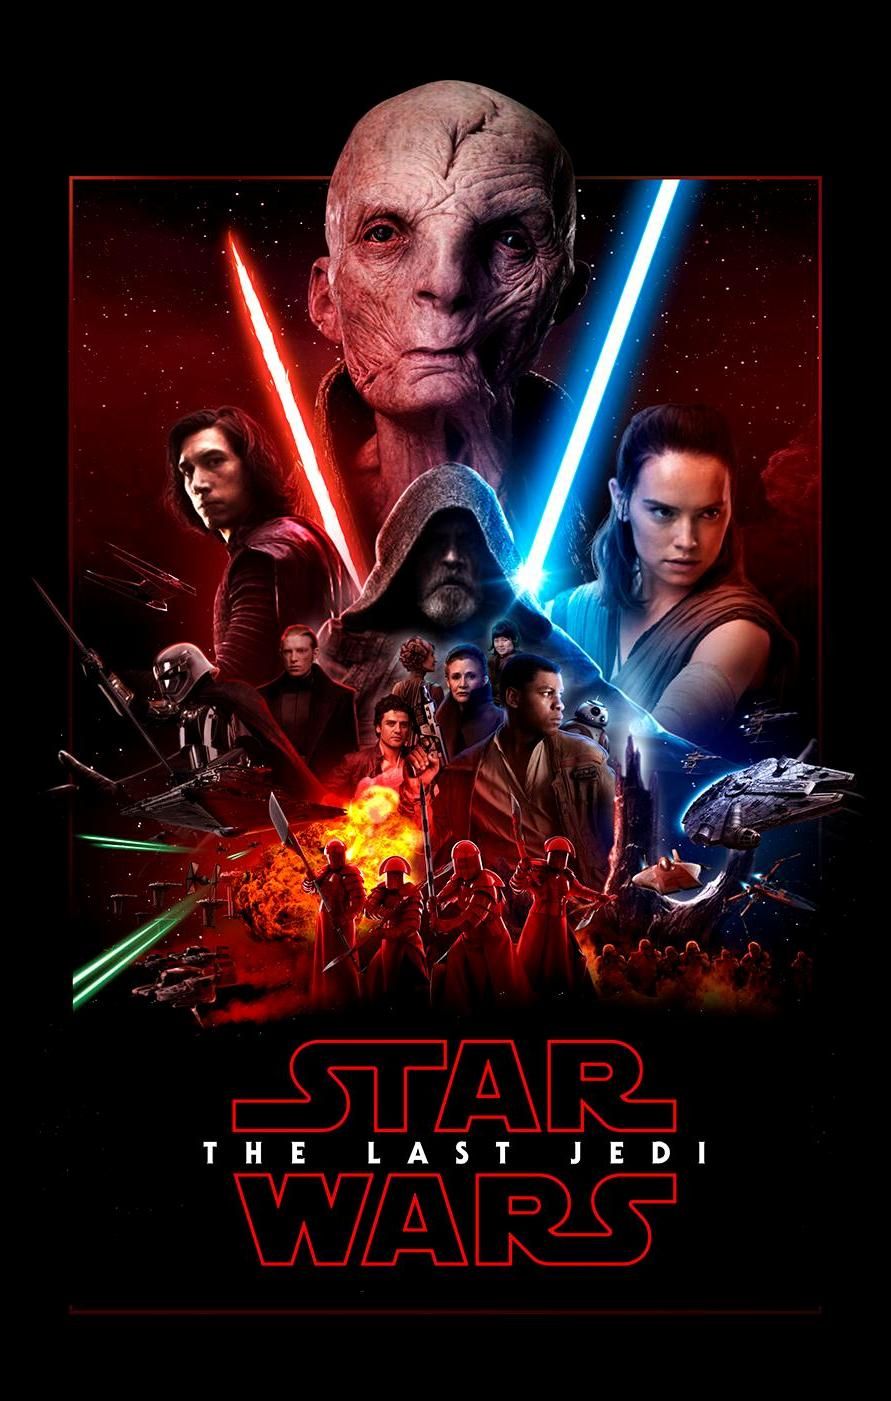 Star Wars The Last Jedi Wallpaper - 2017 Star Wars Episode Viii The Last Jedi , HD Wallpaper & Backgrounds